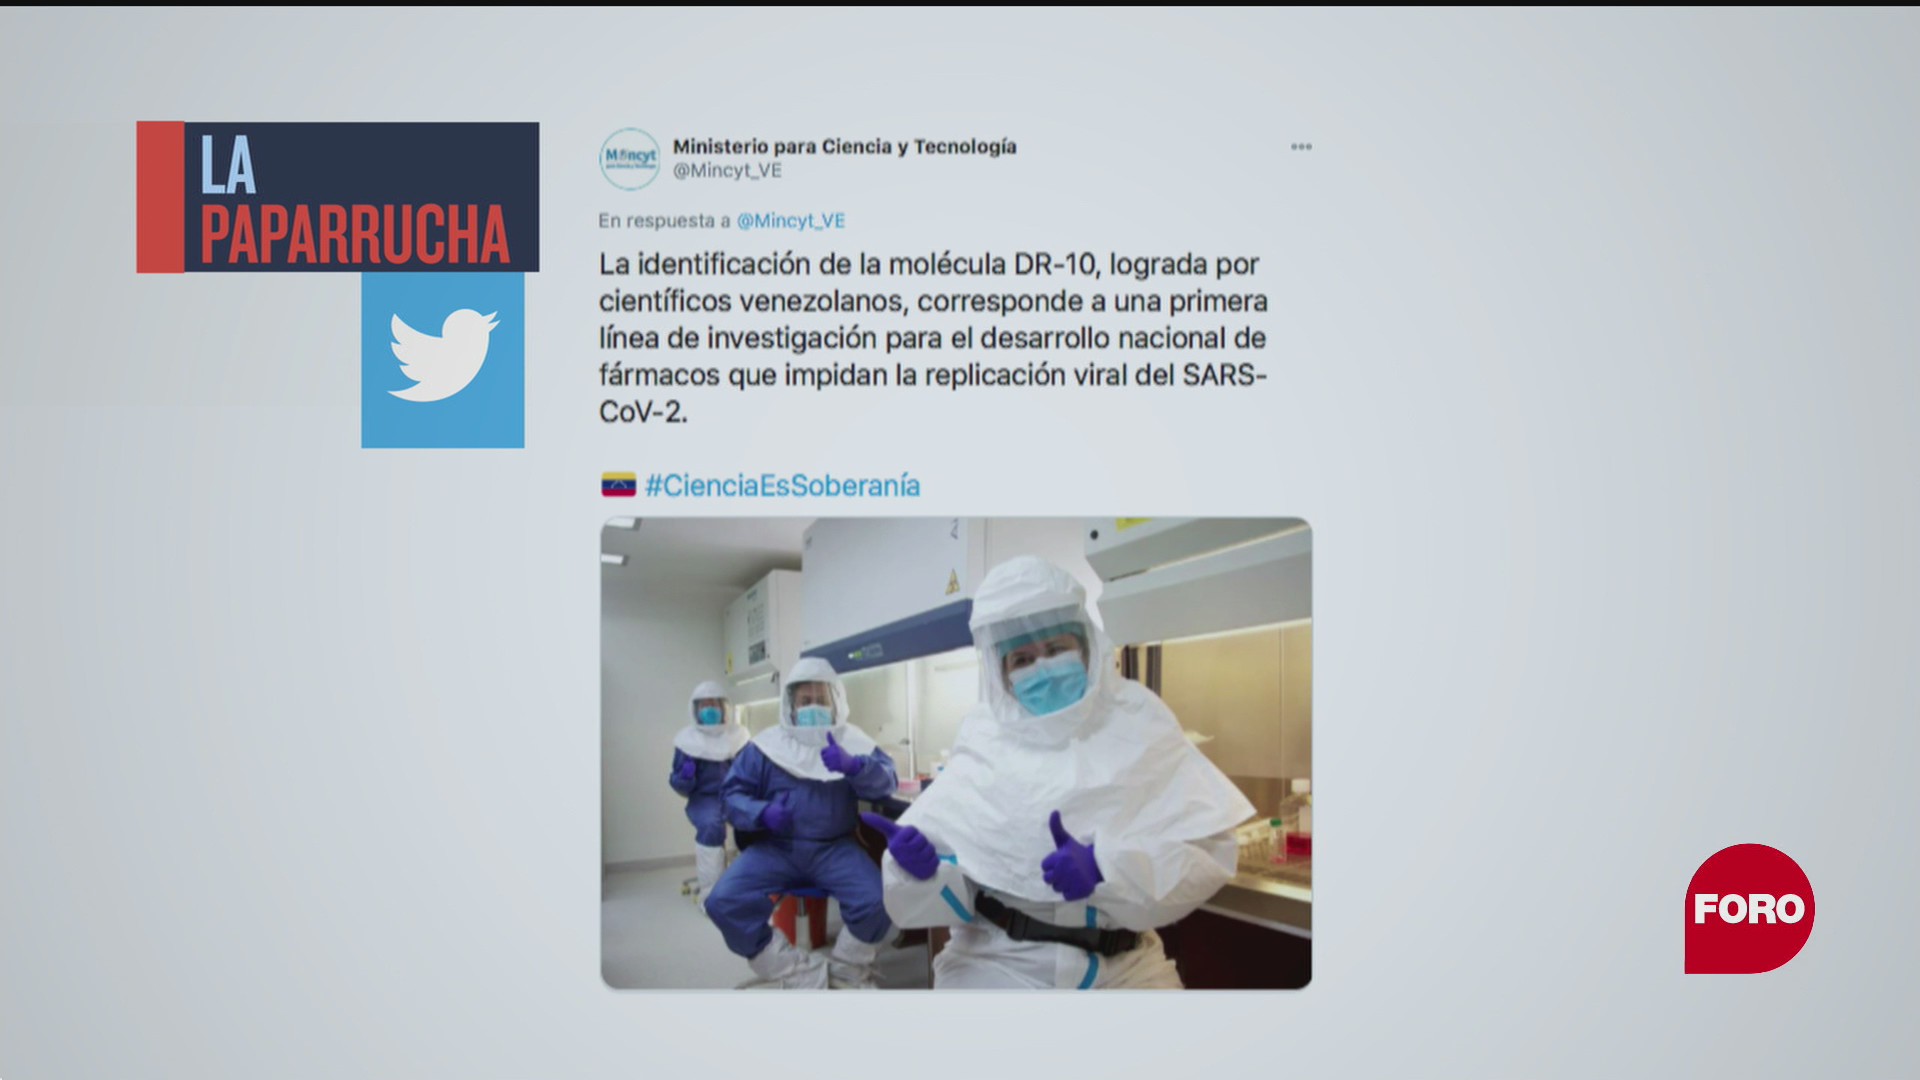 Venezuela desarrolla medicamento contra COVID-19, la paparrucha del día